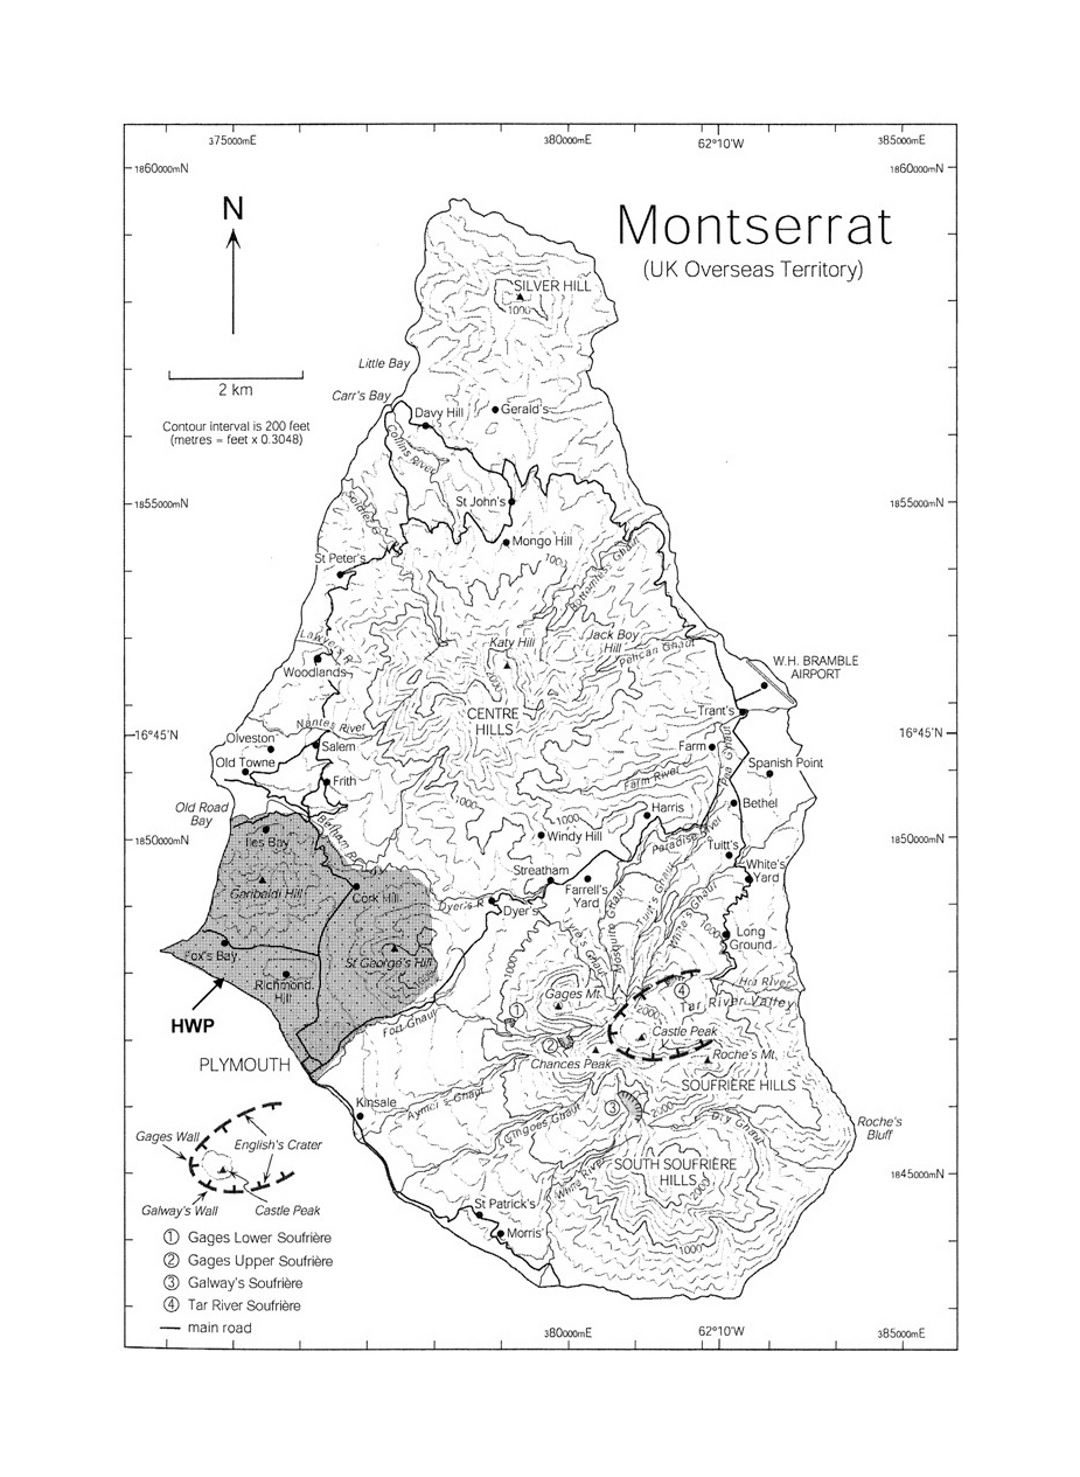 Детальная топографическая карта острова Монтсеррат